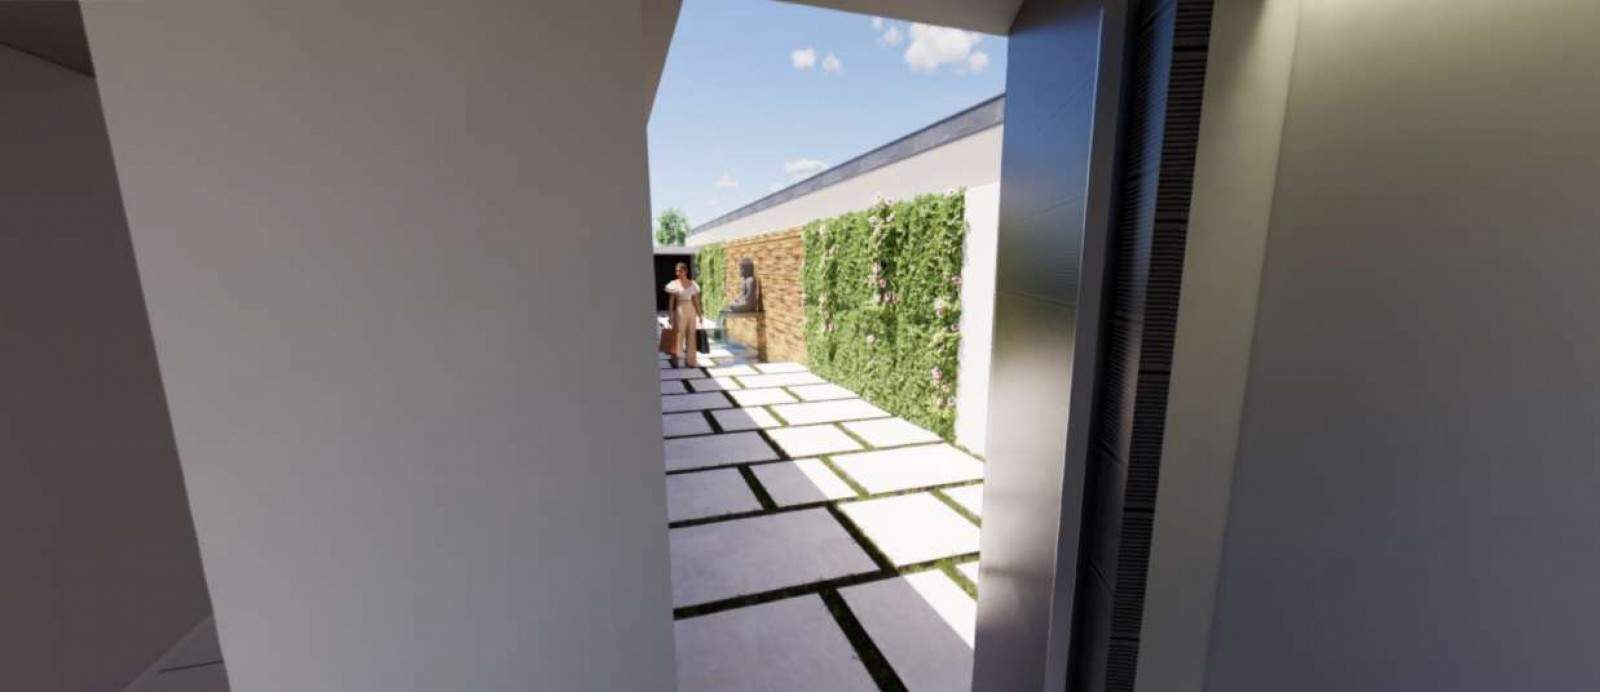 Venta: Chalet independiente de una sola planta en construcción, con jardín y piscina, V. N. Gaia, Portugal_200759